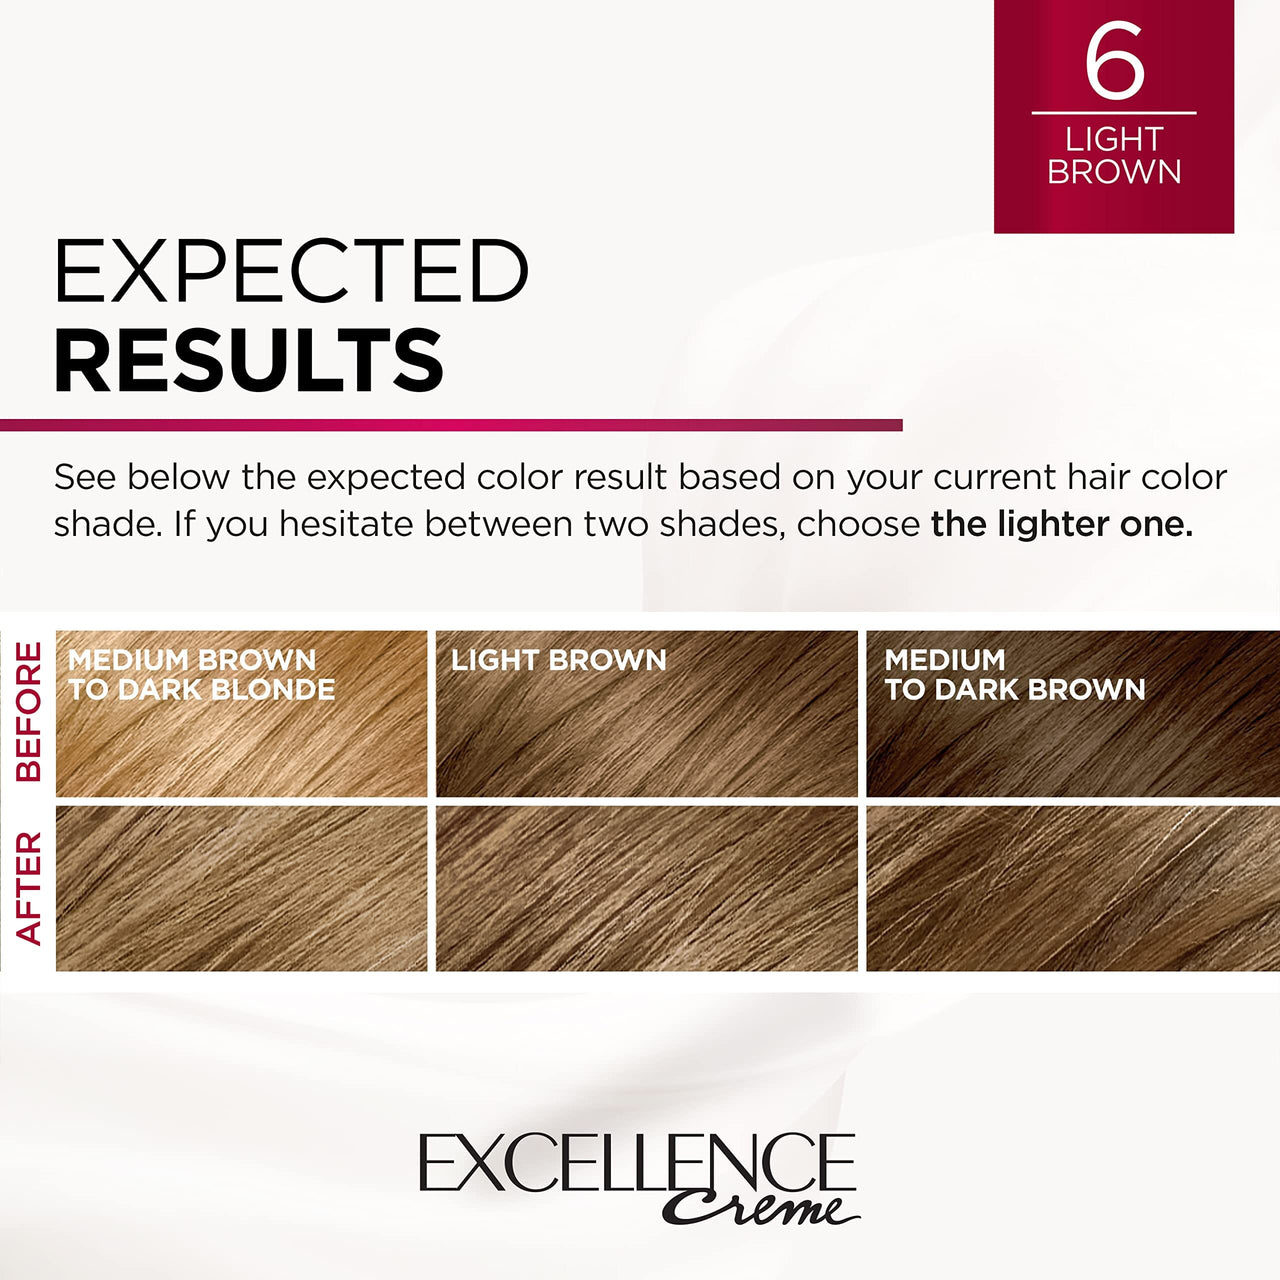 L’Oréal Paris Hair Dye 6 Light Brown L'Oreal Paris Excellence Creme Permanent Hair Color, 6 Light Brown